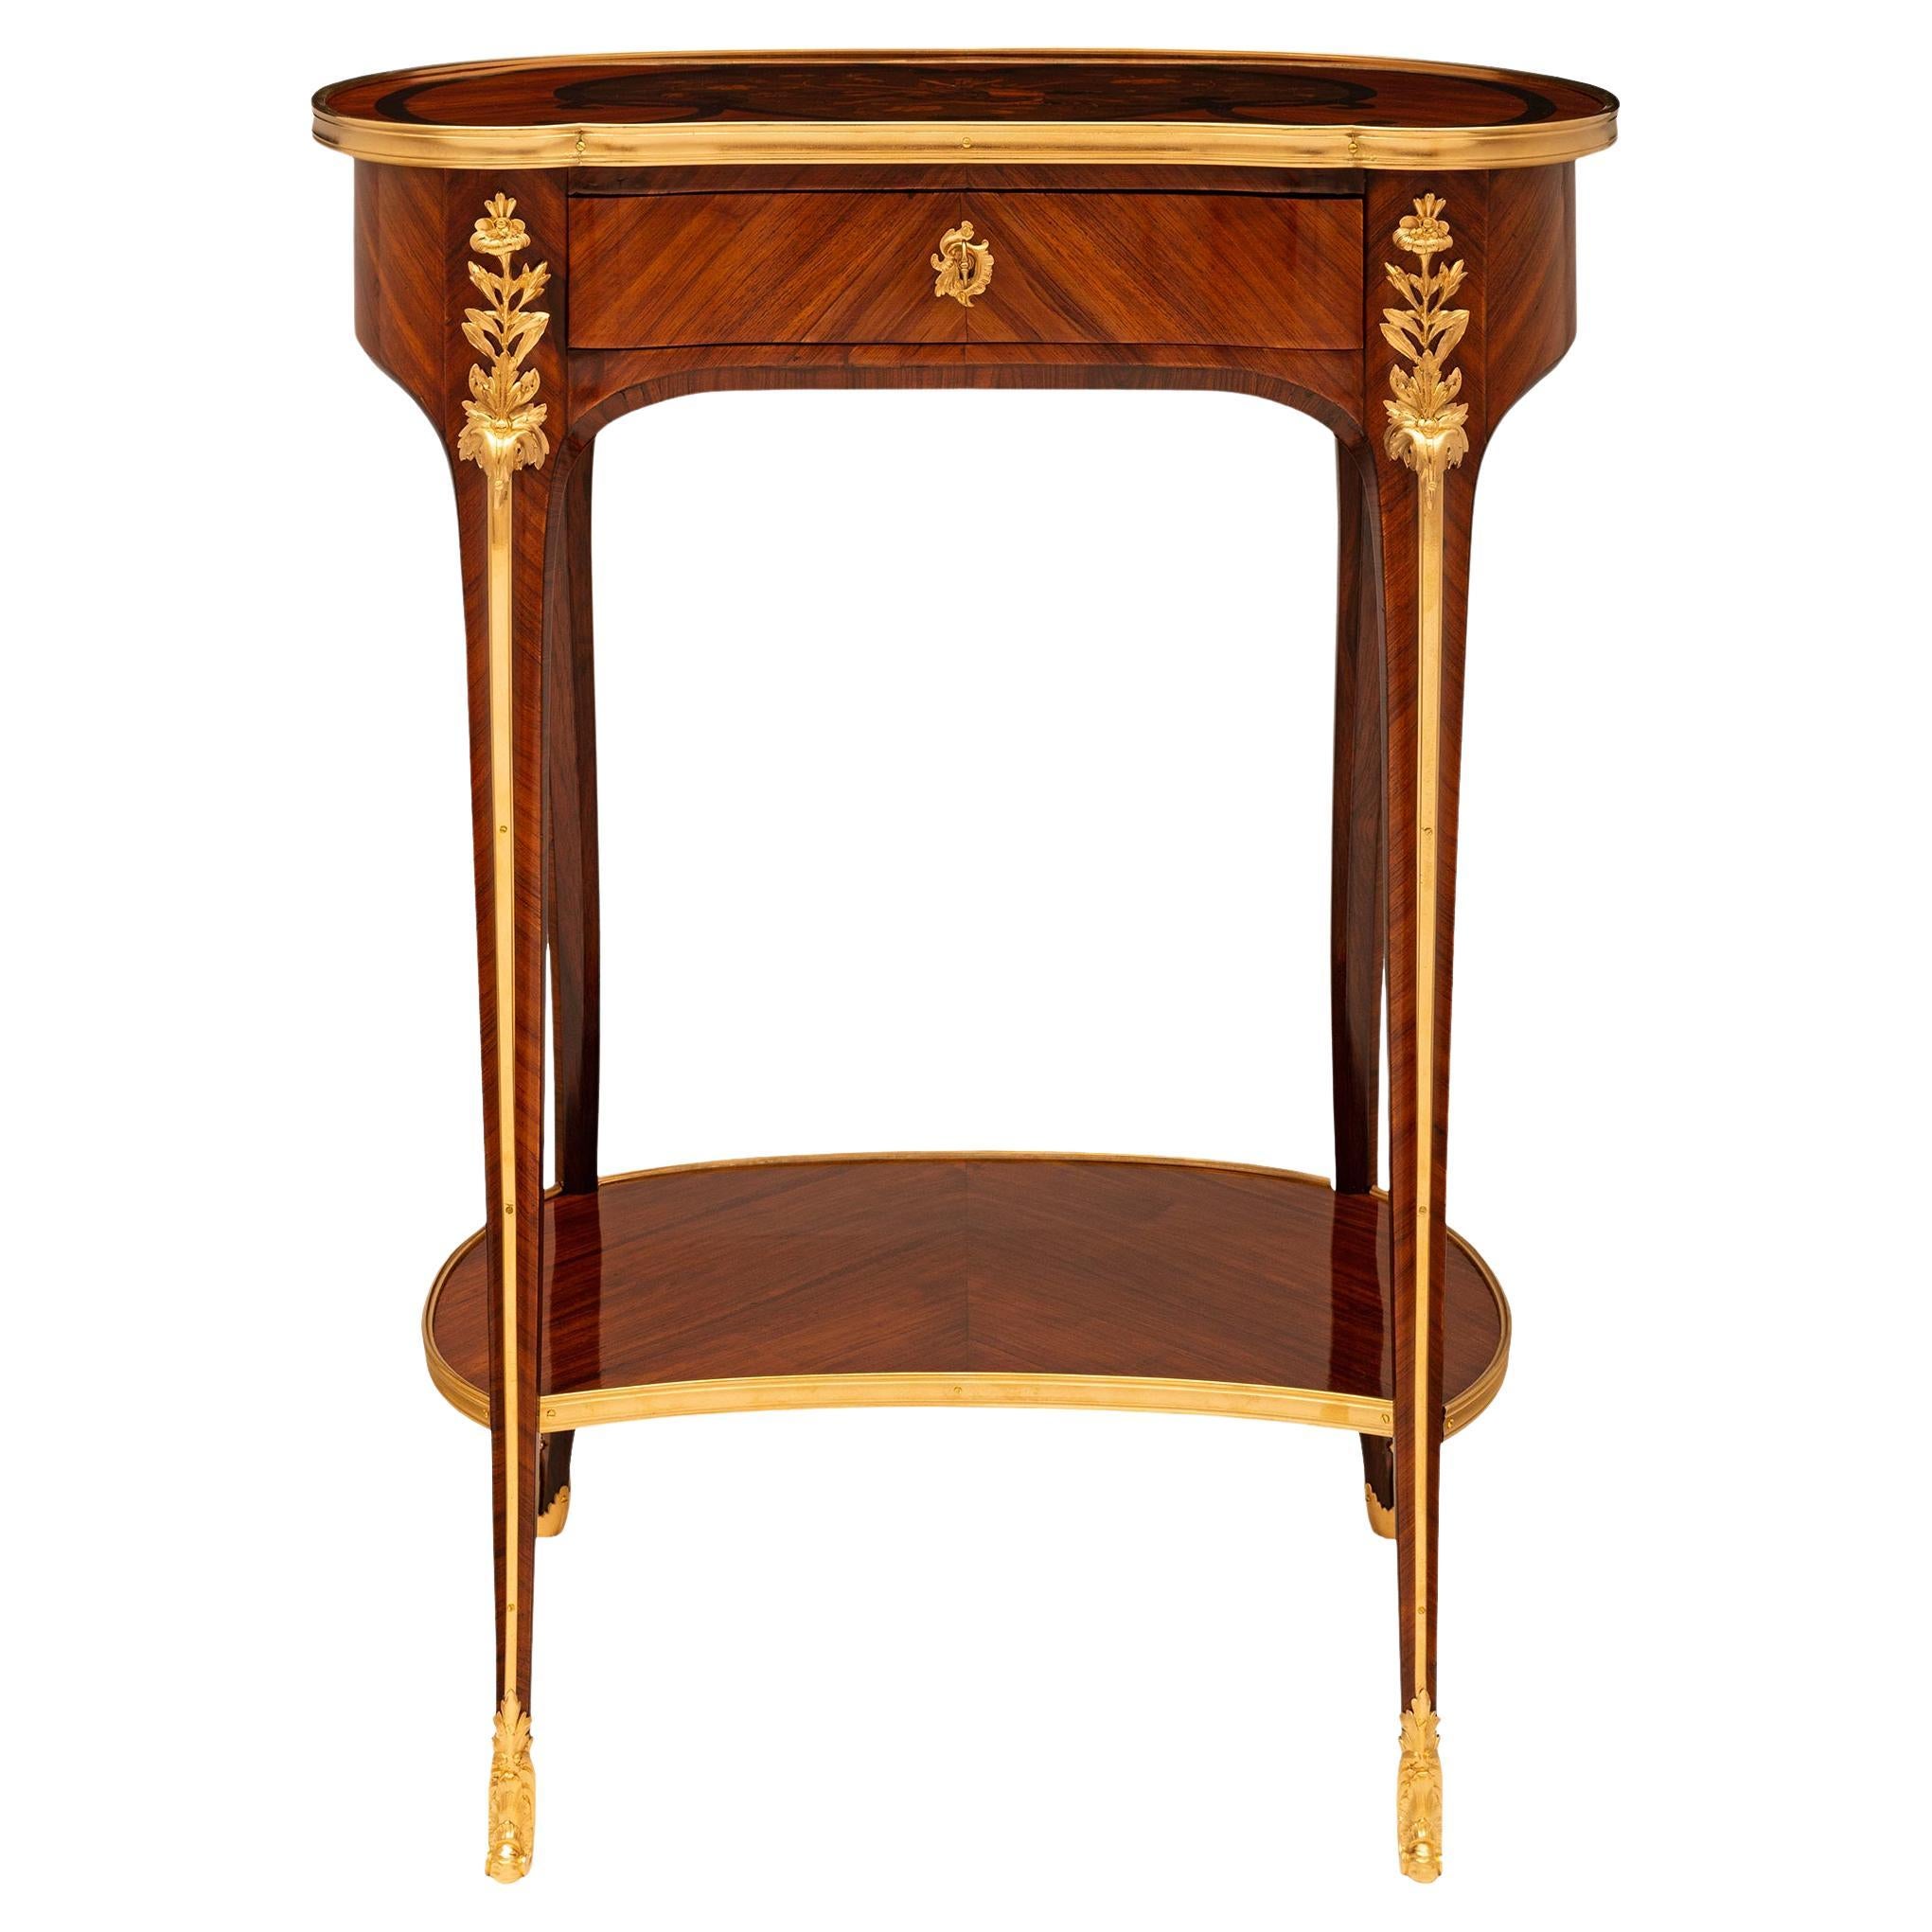 Table d'appoint en bois de roi, tulipier et bronze doré de style Louis XV du XIXe siècle